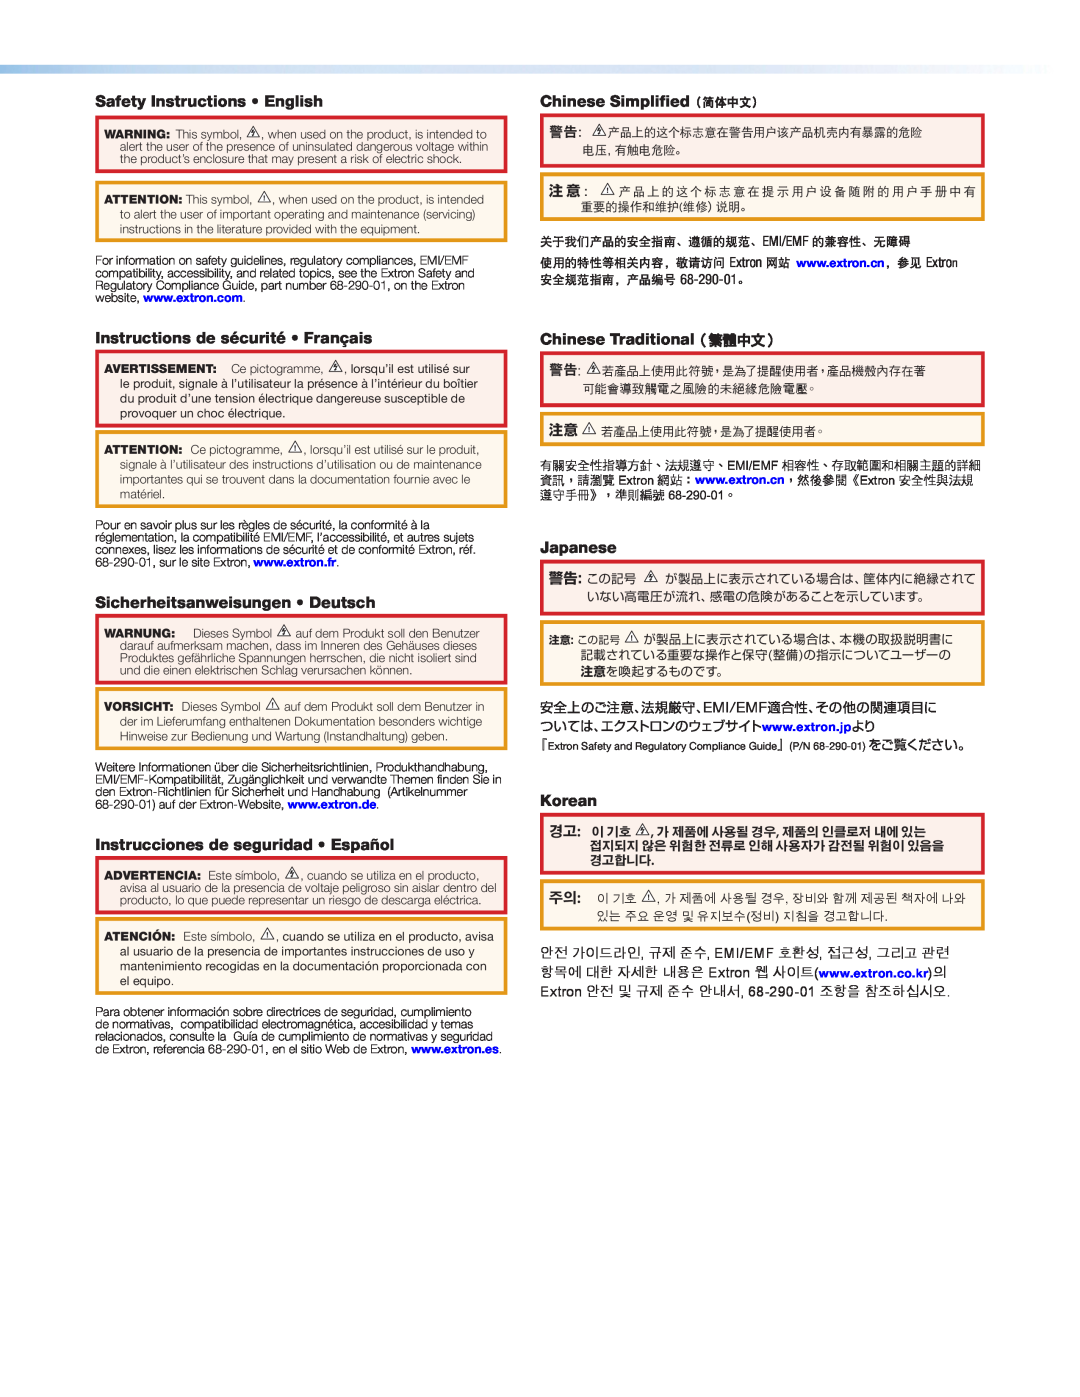 Extron electronic FOX T USW 103 Safety Instructions English, Chinese Simplified（简体中文）, Instructions de sécurité Français 